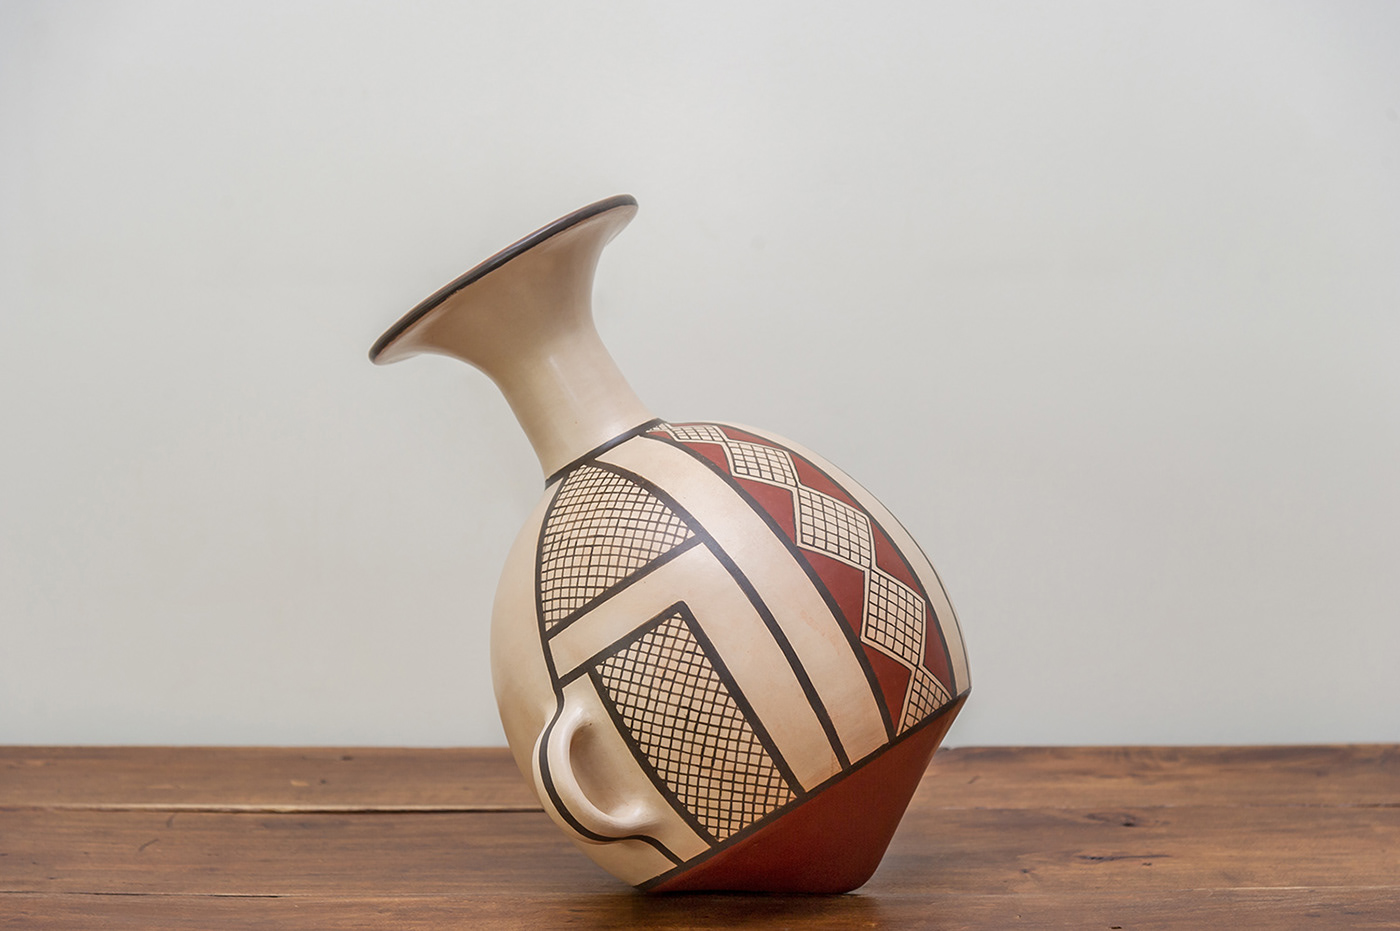 ceramic ceramic design Ceramic Jar jar product design  redesign